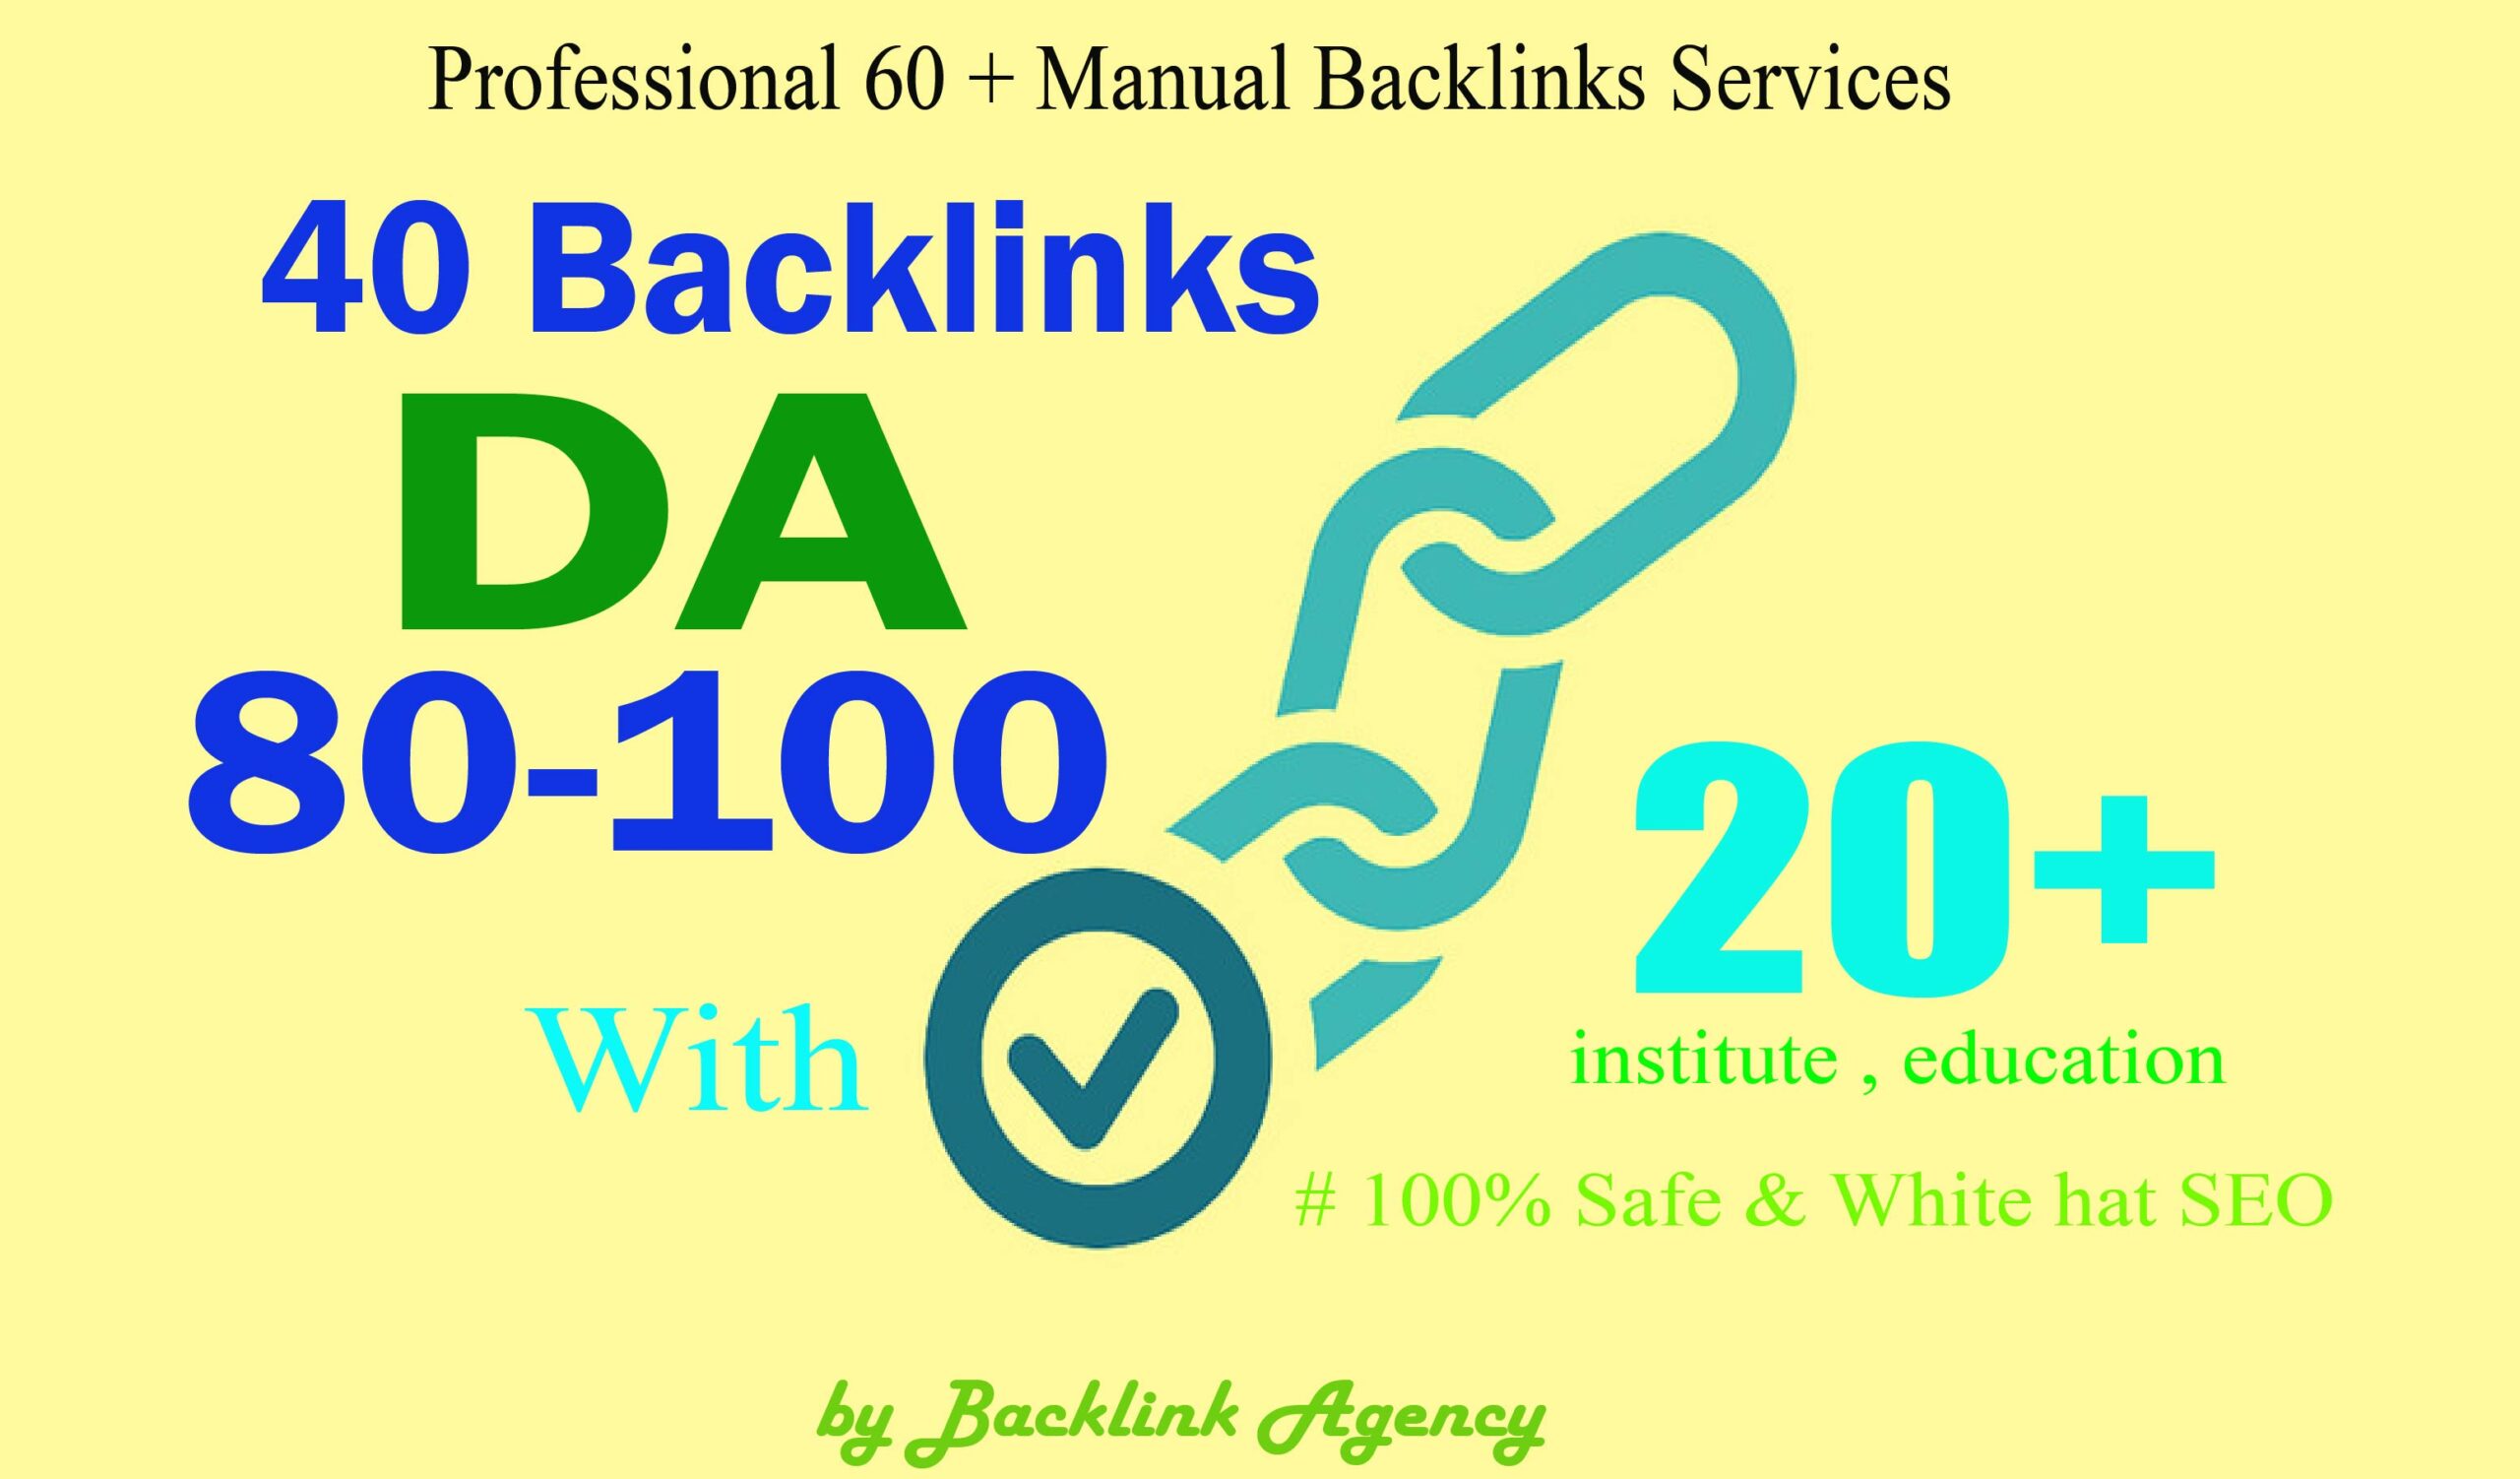 352880 PR9 Backlinks DA-100 With 5000 Links Easy Link Juice & Faster Index